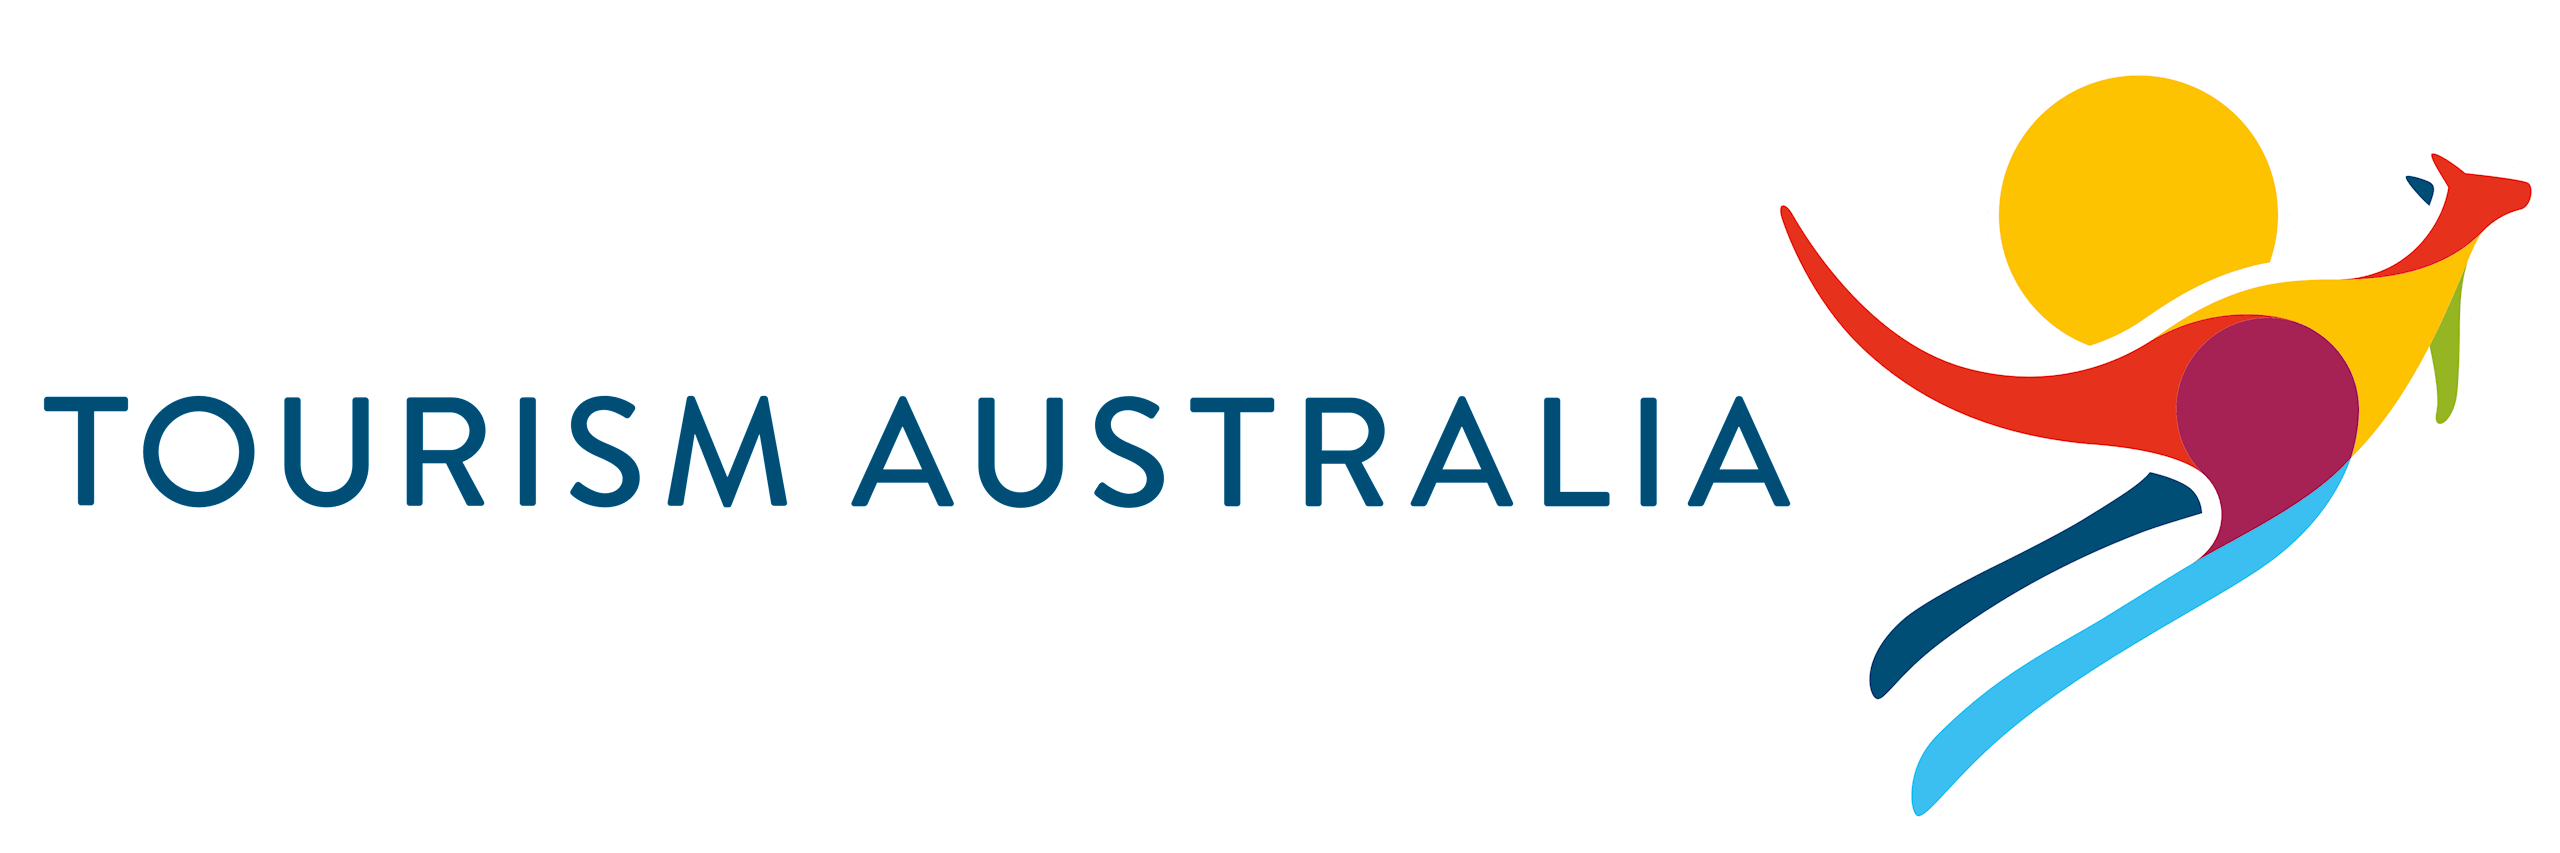 Tourism Australia logo.